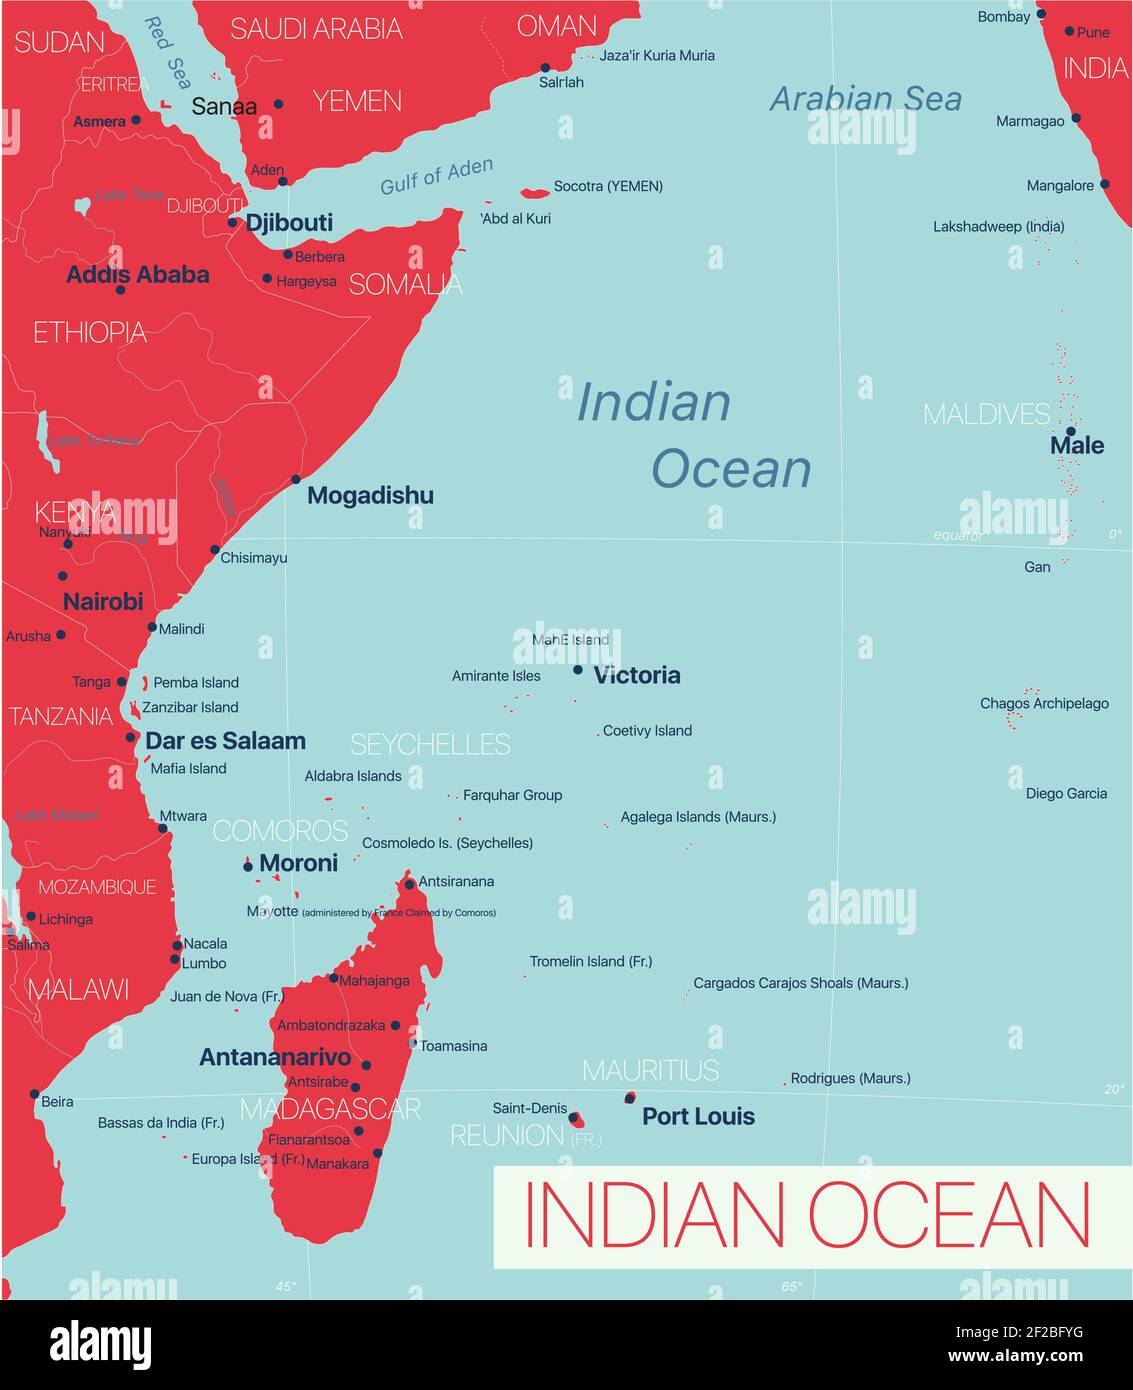 Région de l'océan Indien carte détaillée modifiable avec régions villes et sites géographiques. Fichier vectoriel EPS-10 Illustration de Vecteur